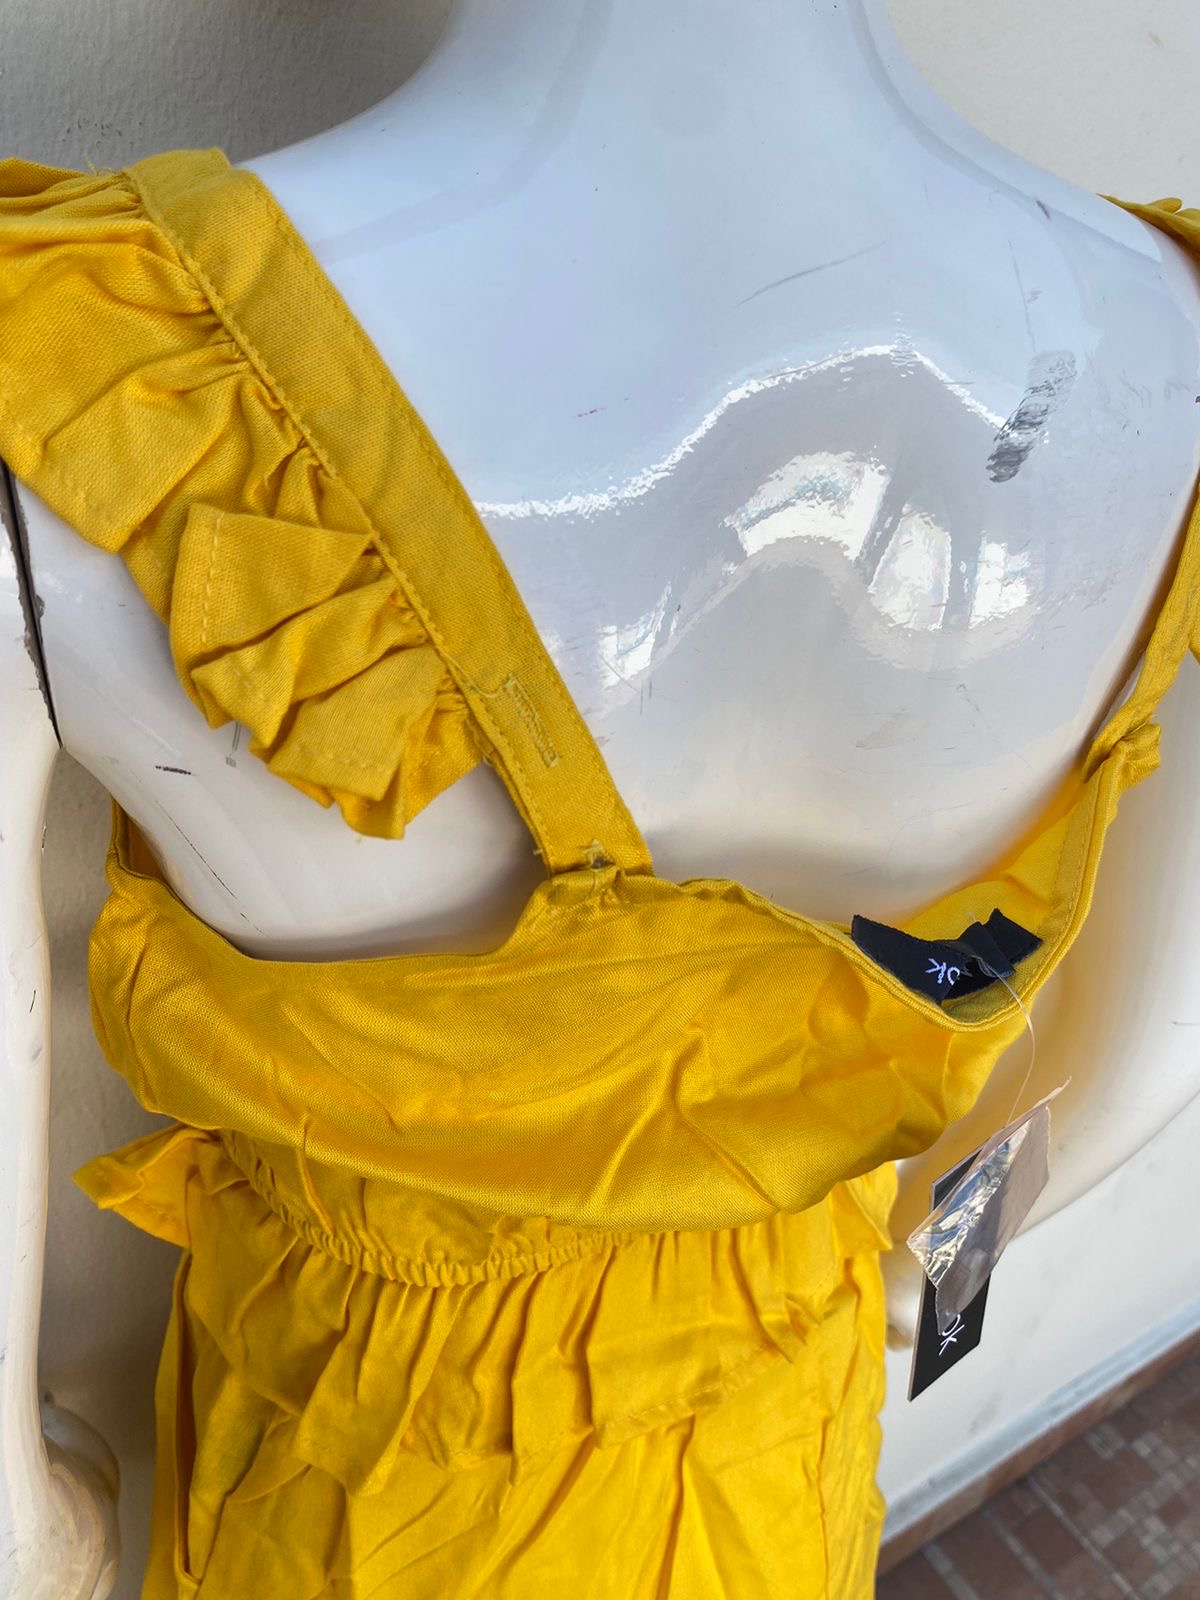 Conjunto  New Look Original, falda y top en color amarillo mostaza.